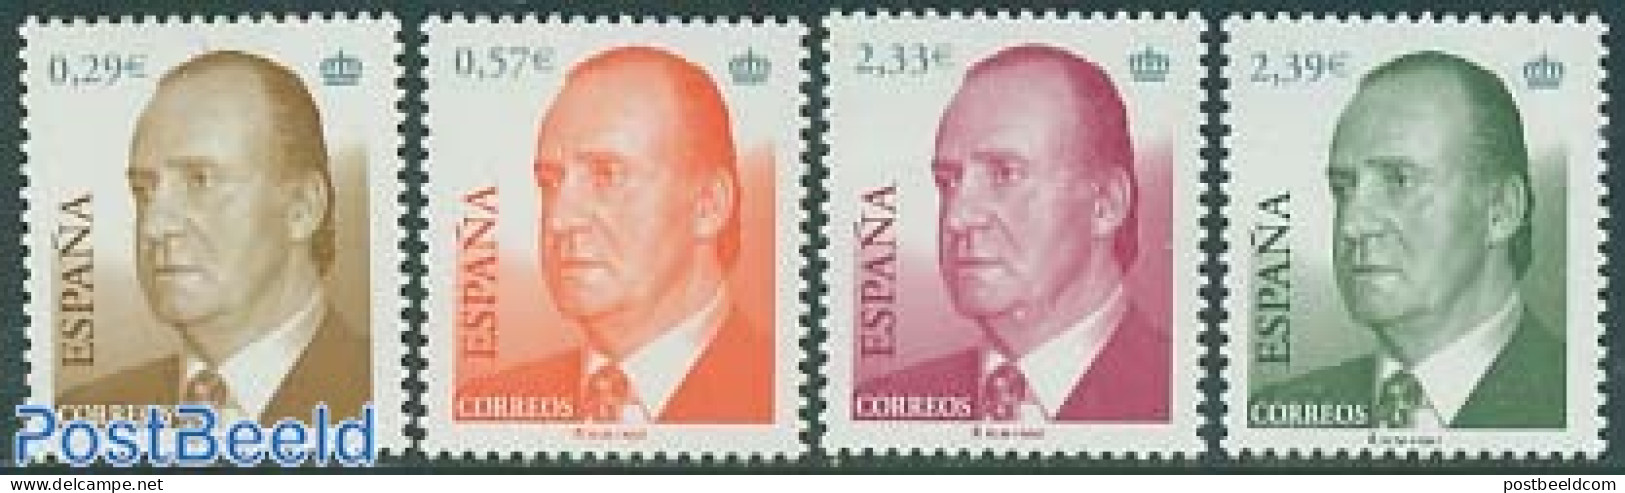 Spain 2006 Definitives 4v, Mint NH - Unused Stamps